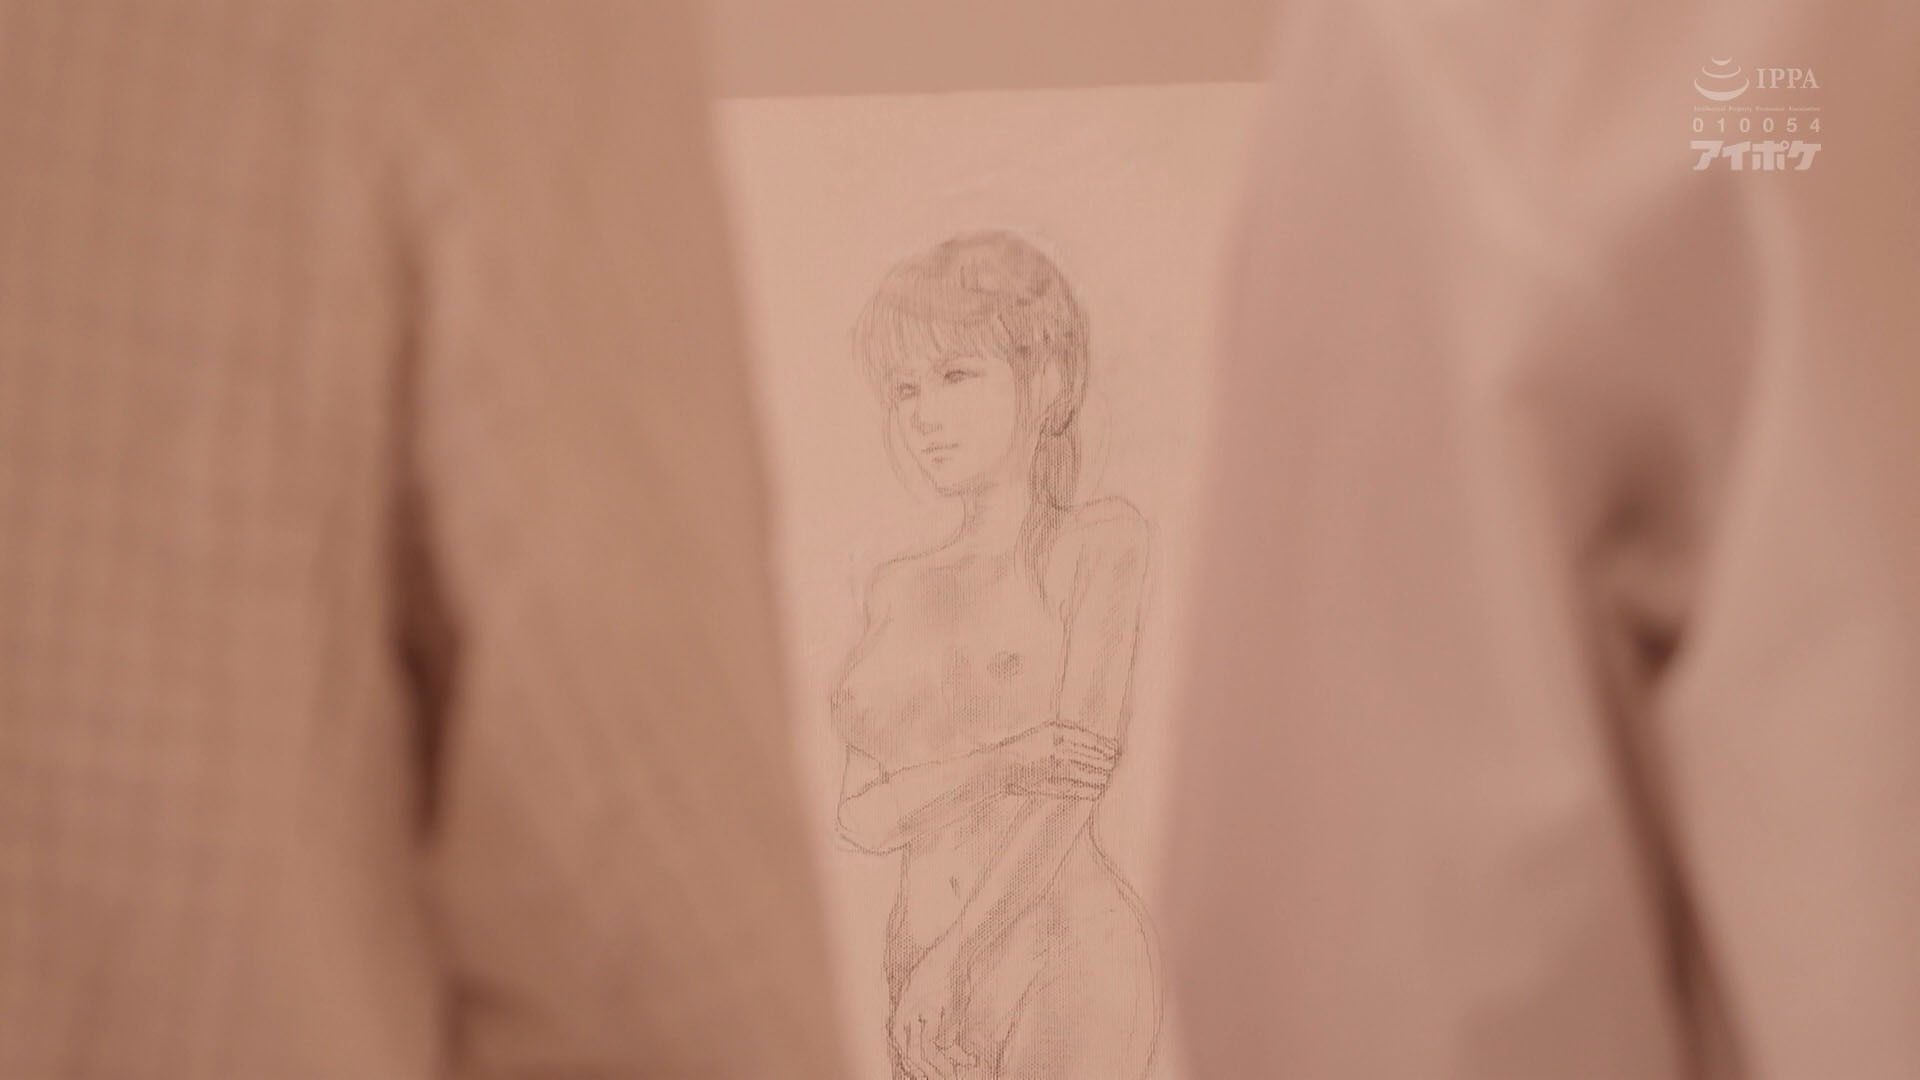 第39期 美术生枫花恋风评恐被害日本画室里的校园性欺凌事件  水果解说  第1张